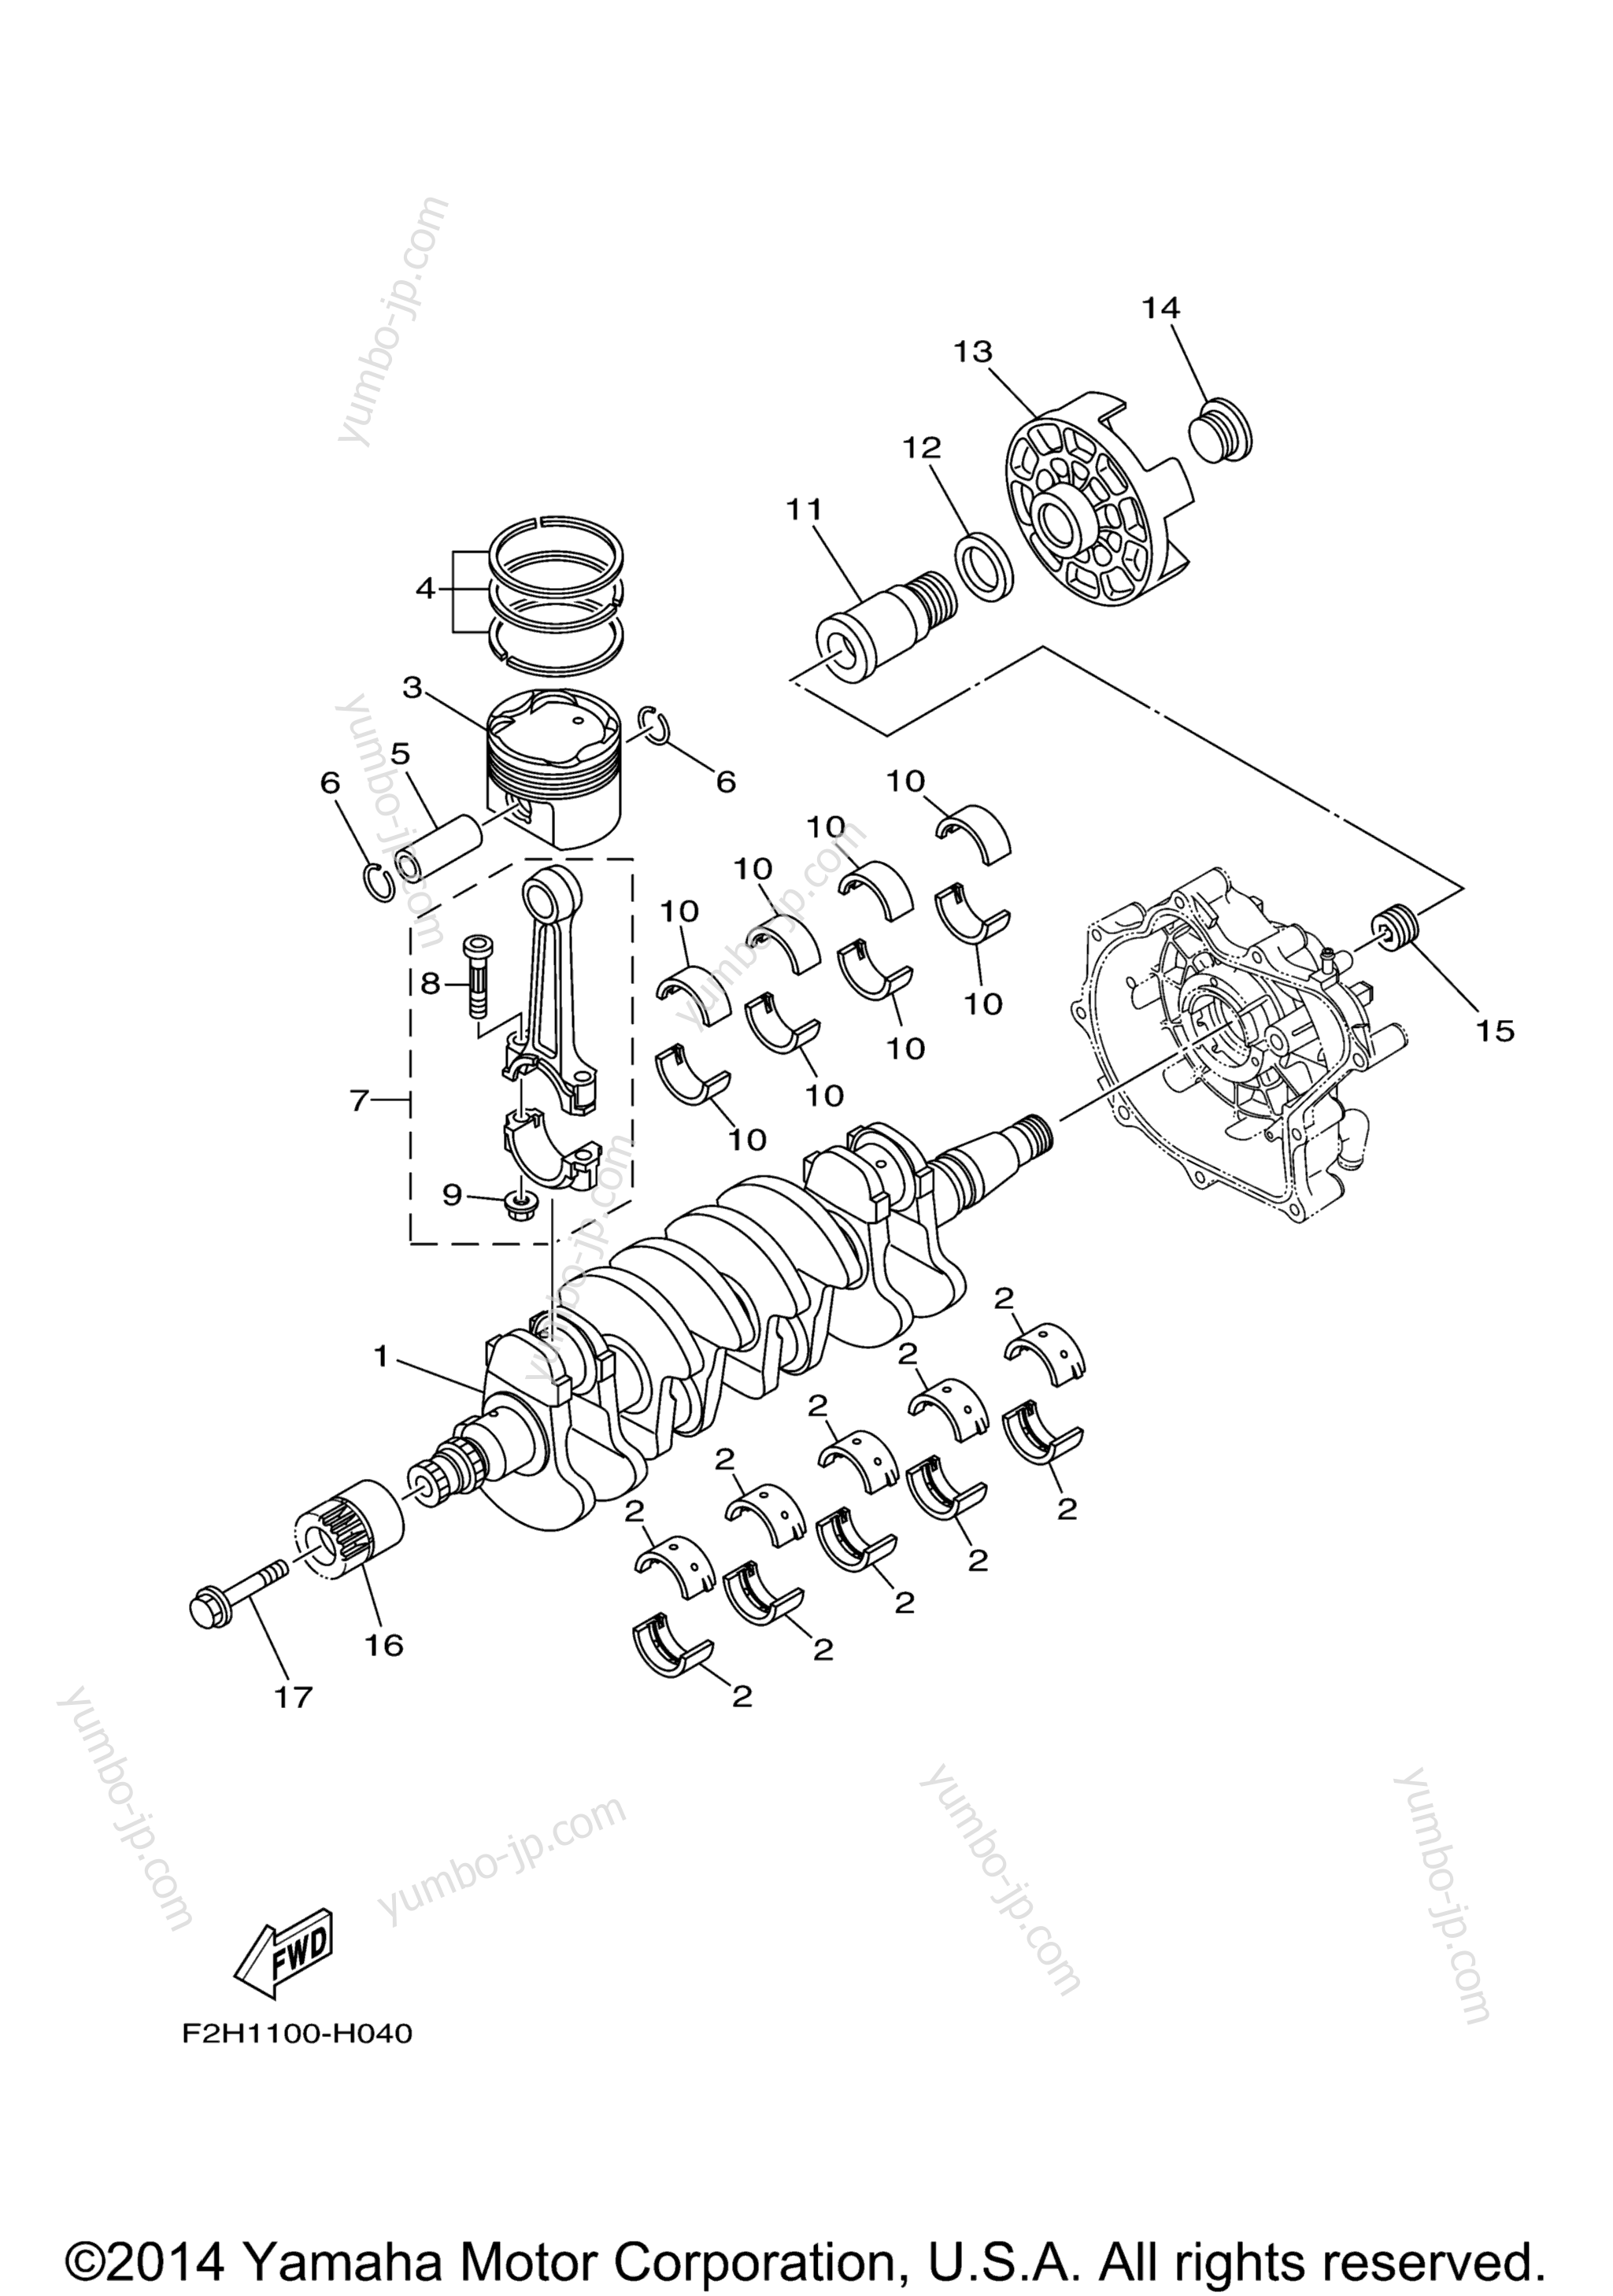 Crankshaft & Piston для катеров YAMAHA AR190 (RX1800BMC) 2013 г.